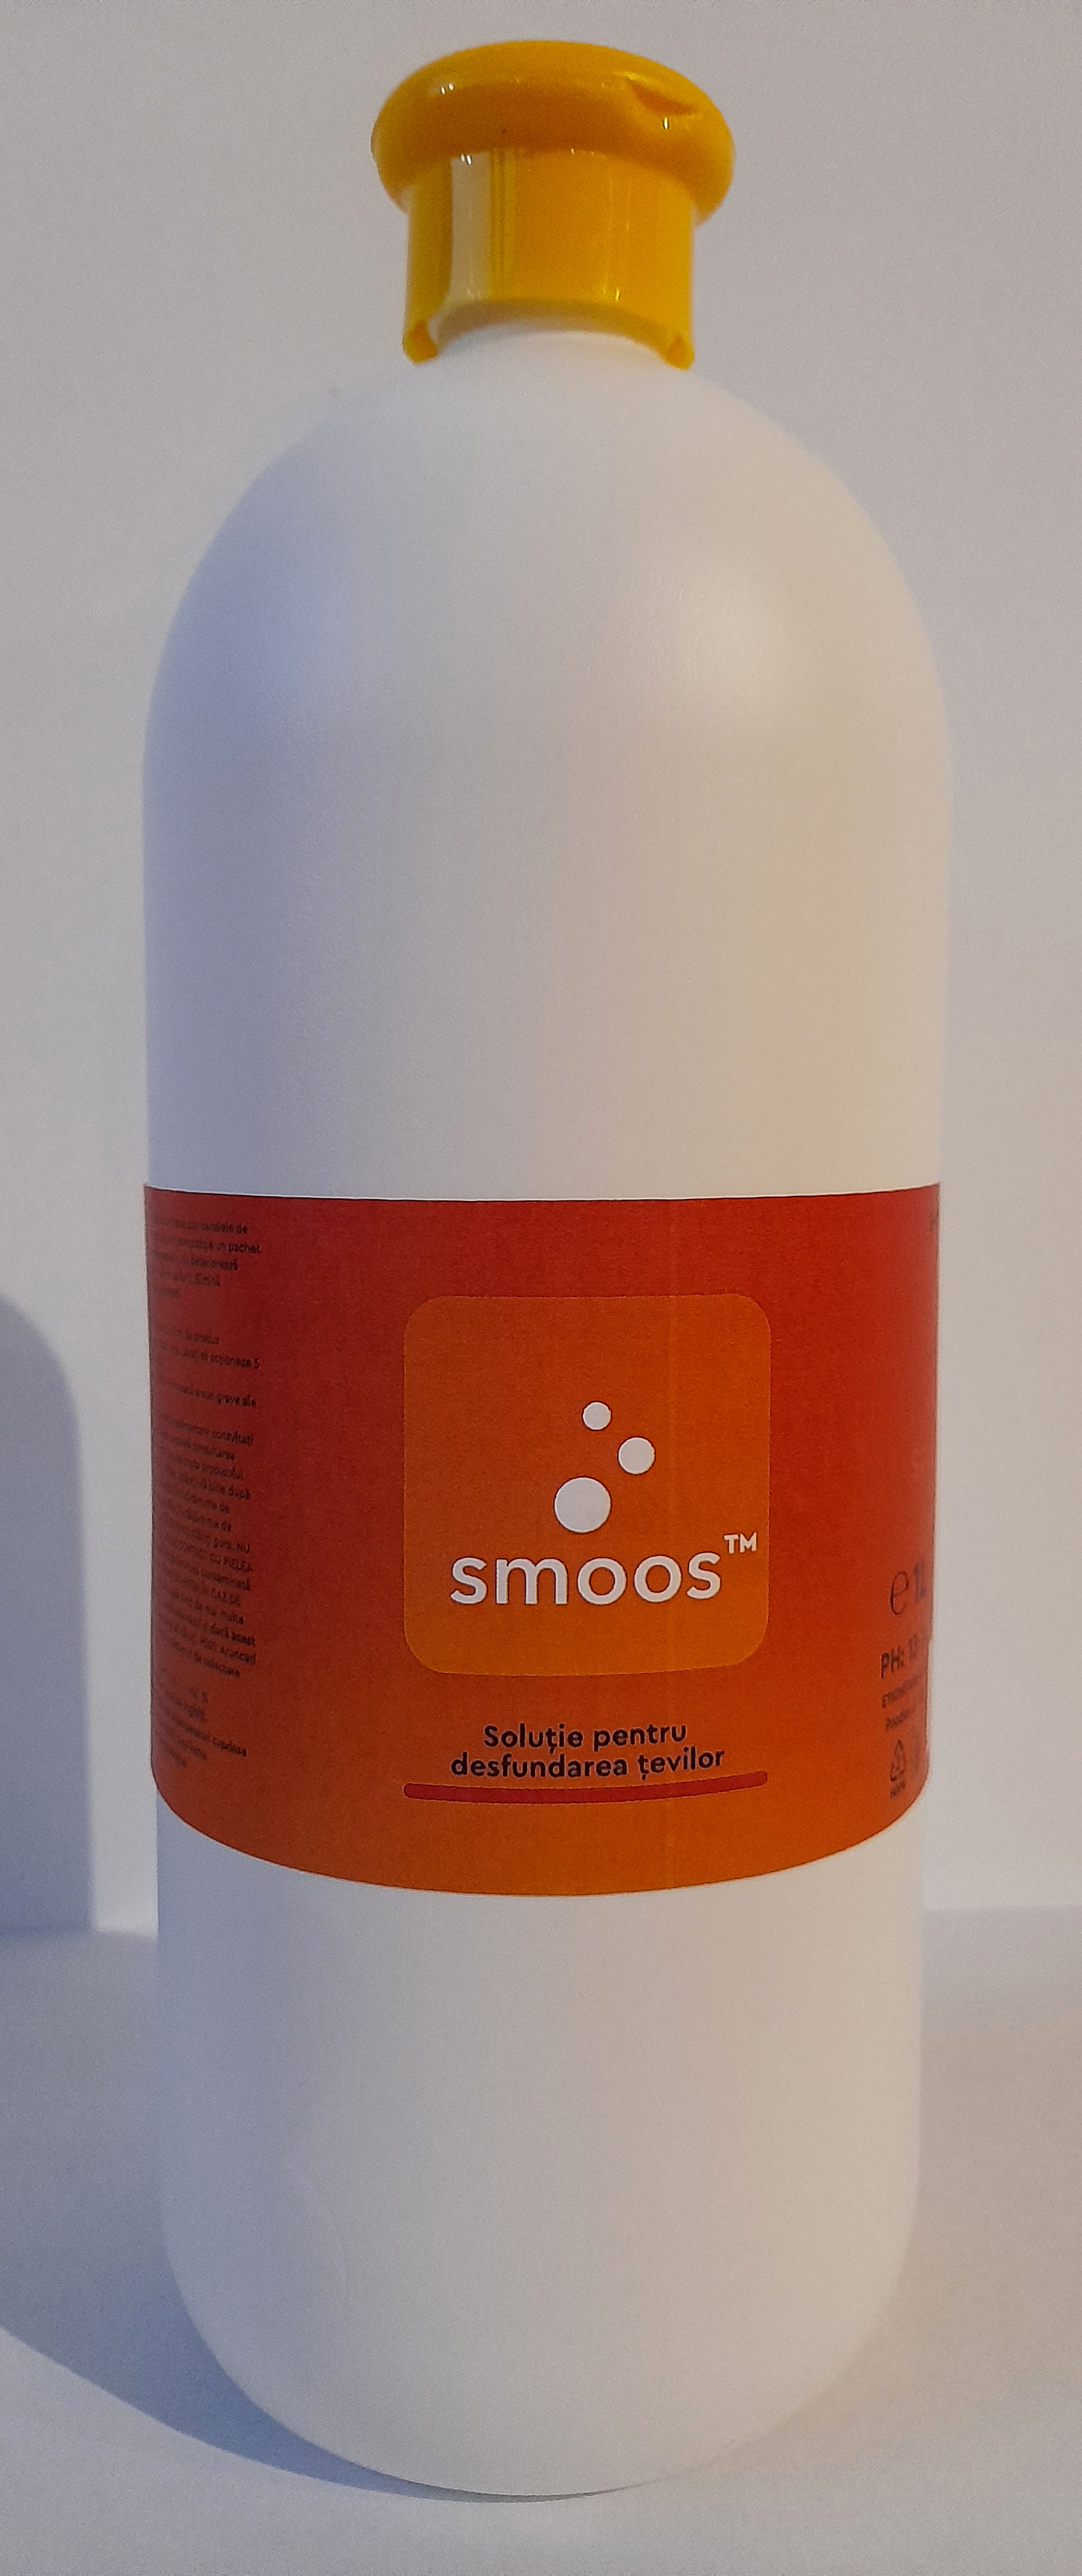 Smoos - Solutie pentru desfundarea tevilor 1L (SM78573)